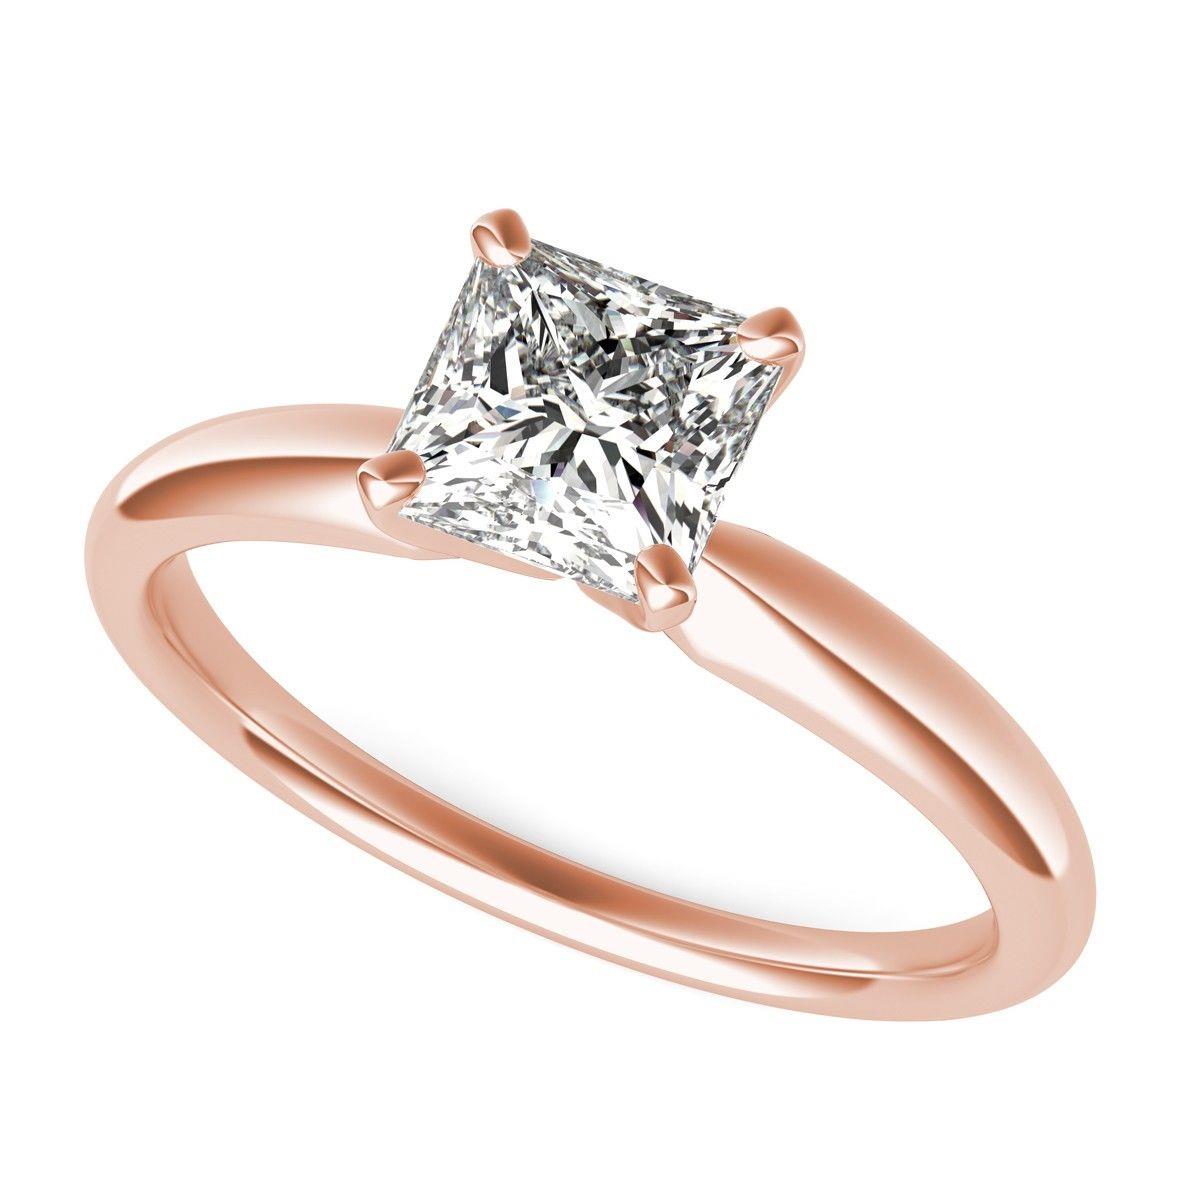 Details about   1.66 Princess Red CZ Statement Engagement Wedding Designer Ring 14k Rose Gold